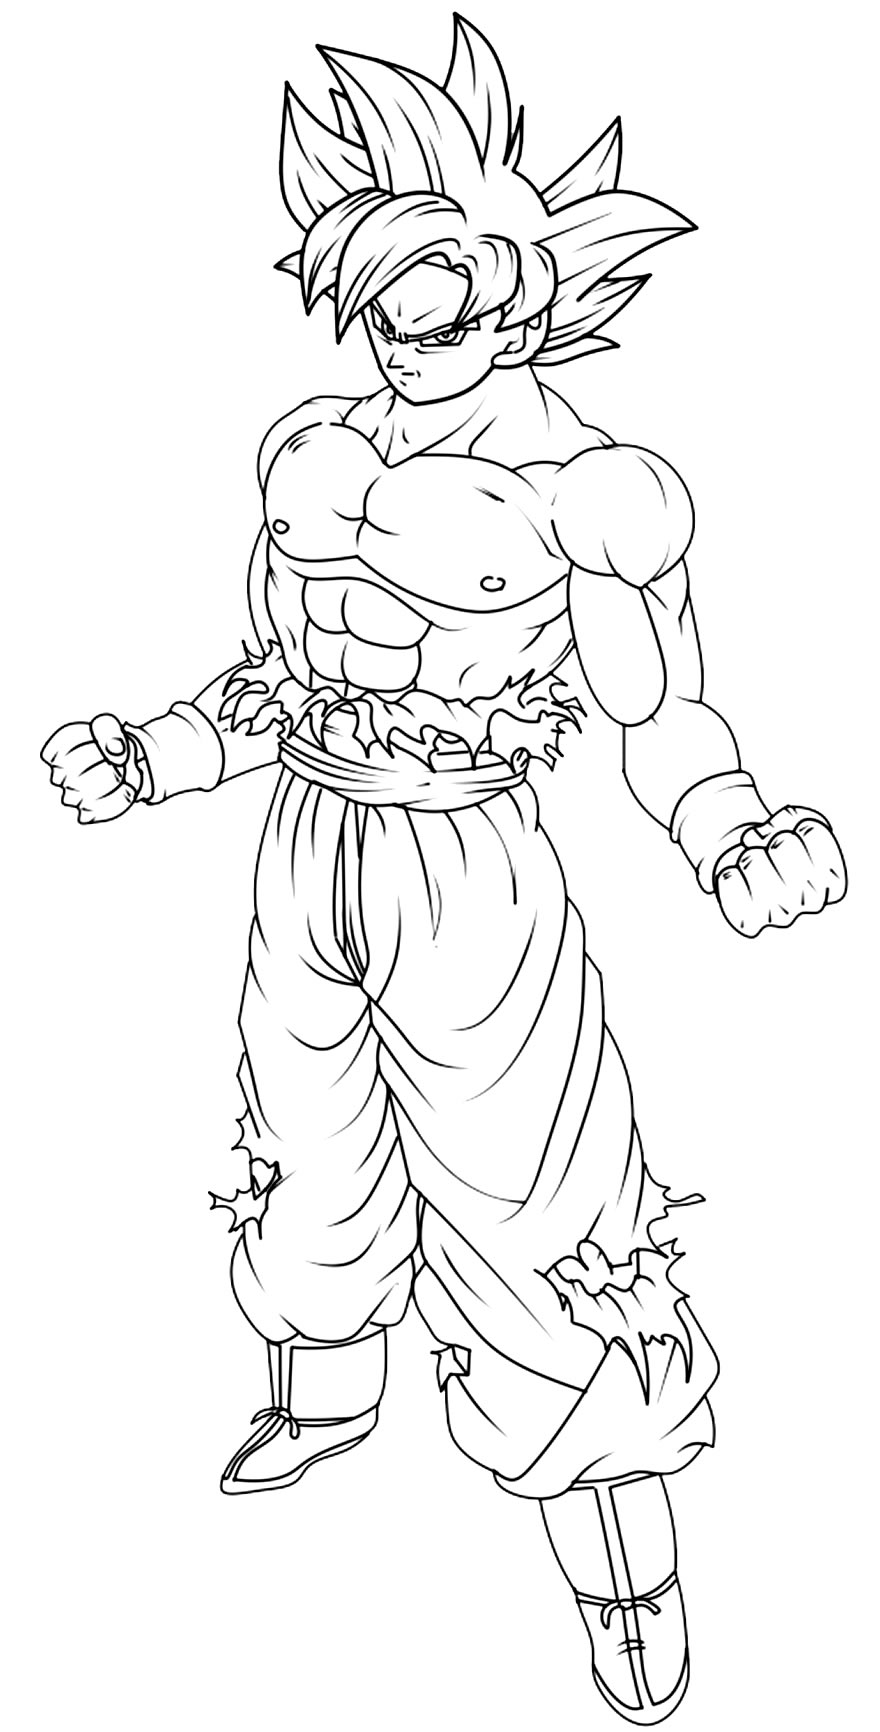 Desenho do Goku para pintar